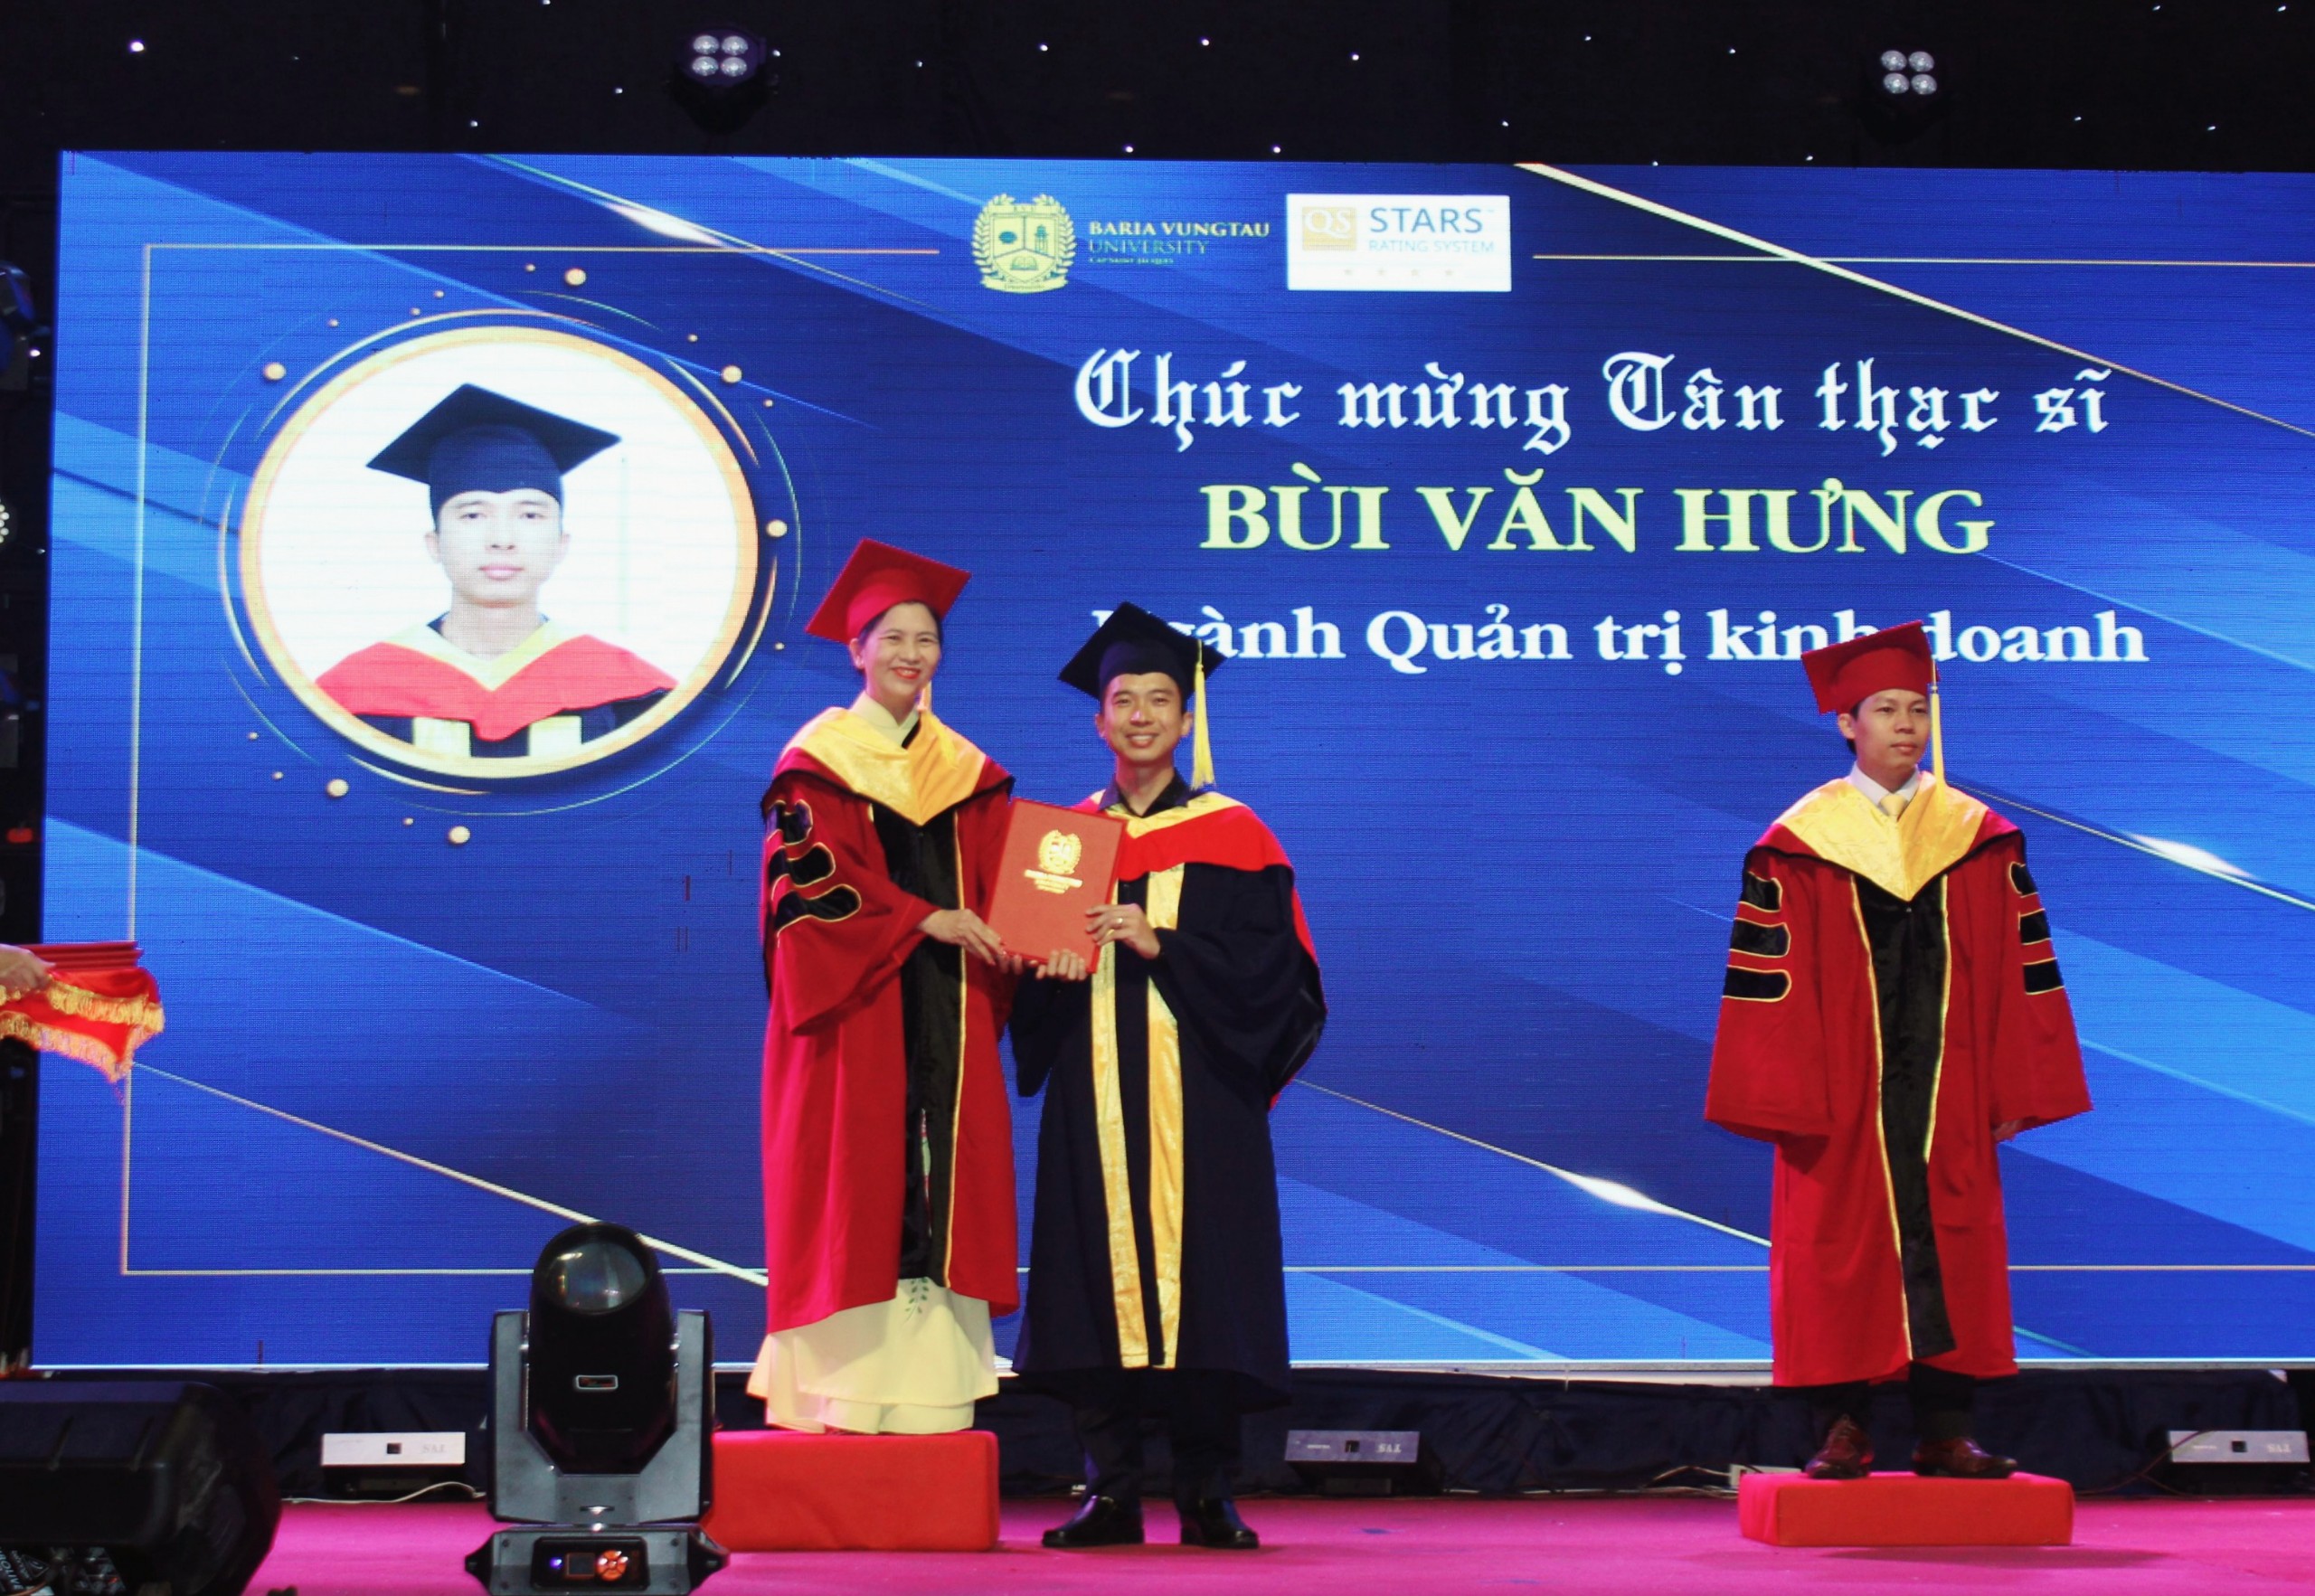 PGS. TS. LS. Nguyễn Thị Hoài Phương trao bằng tốt nghiệp trình độ Thạc sĩ cho học viên Bùi Văn Hưng.